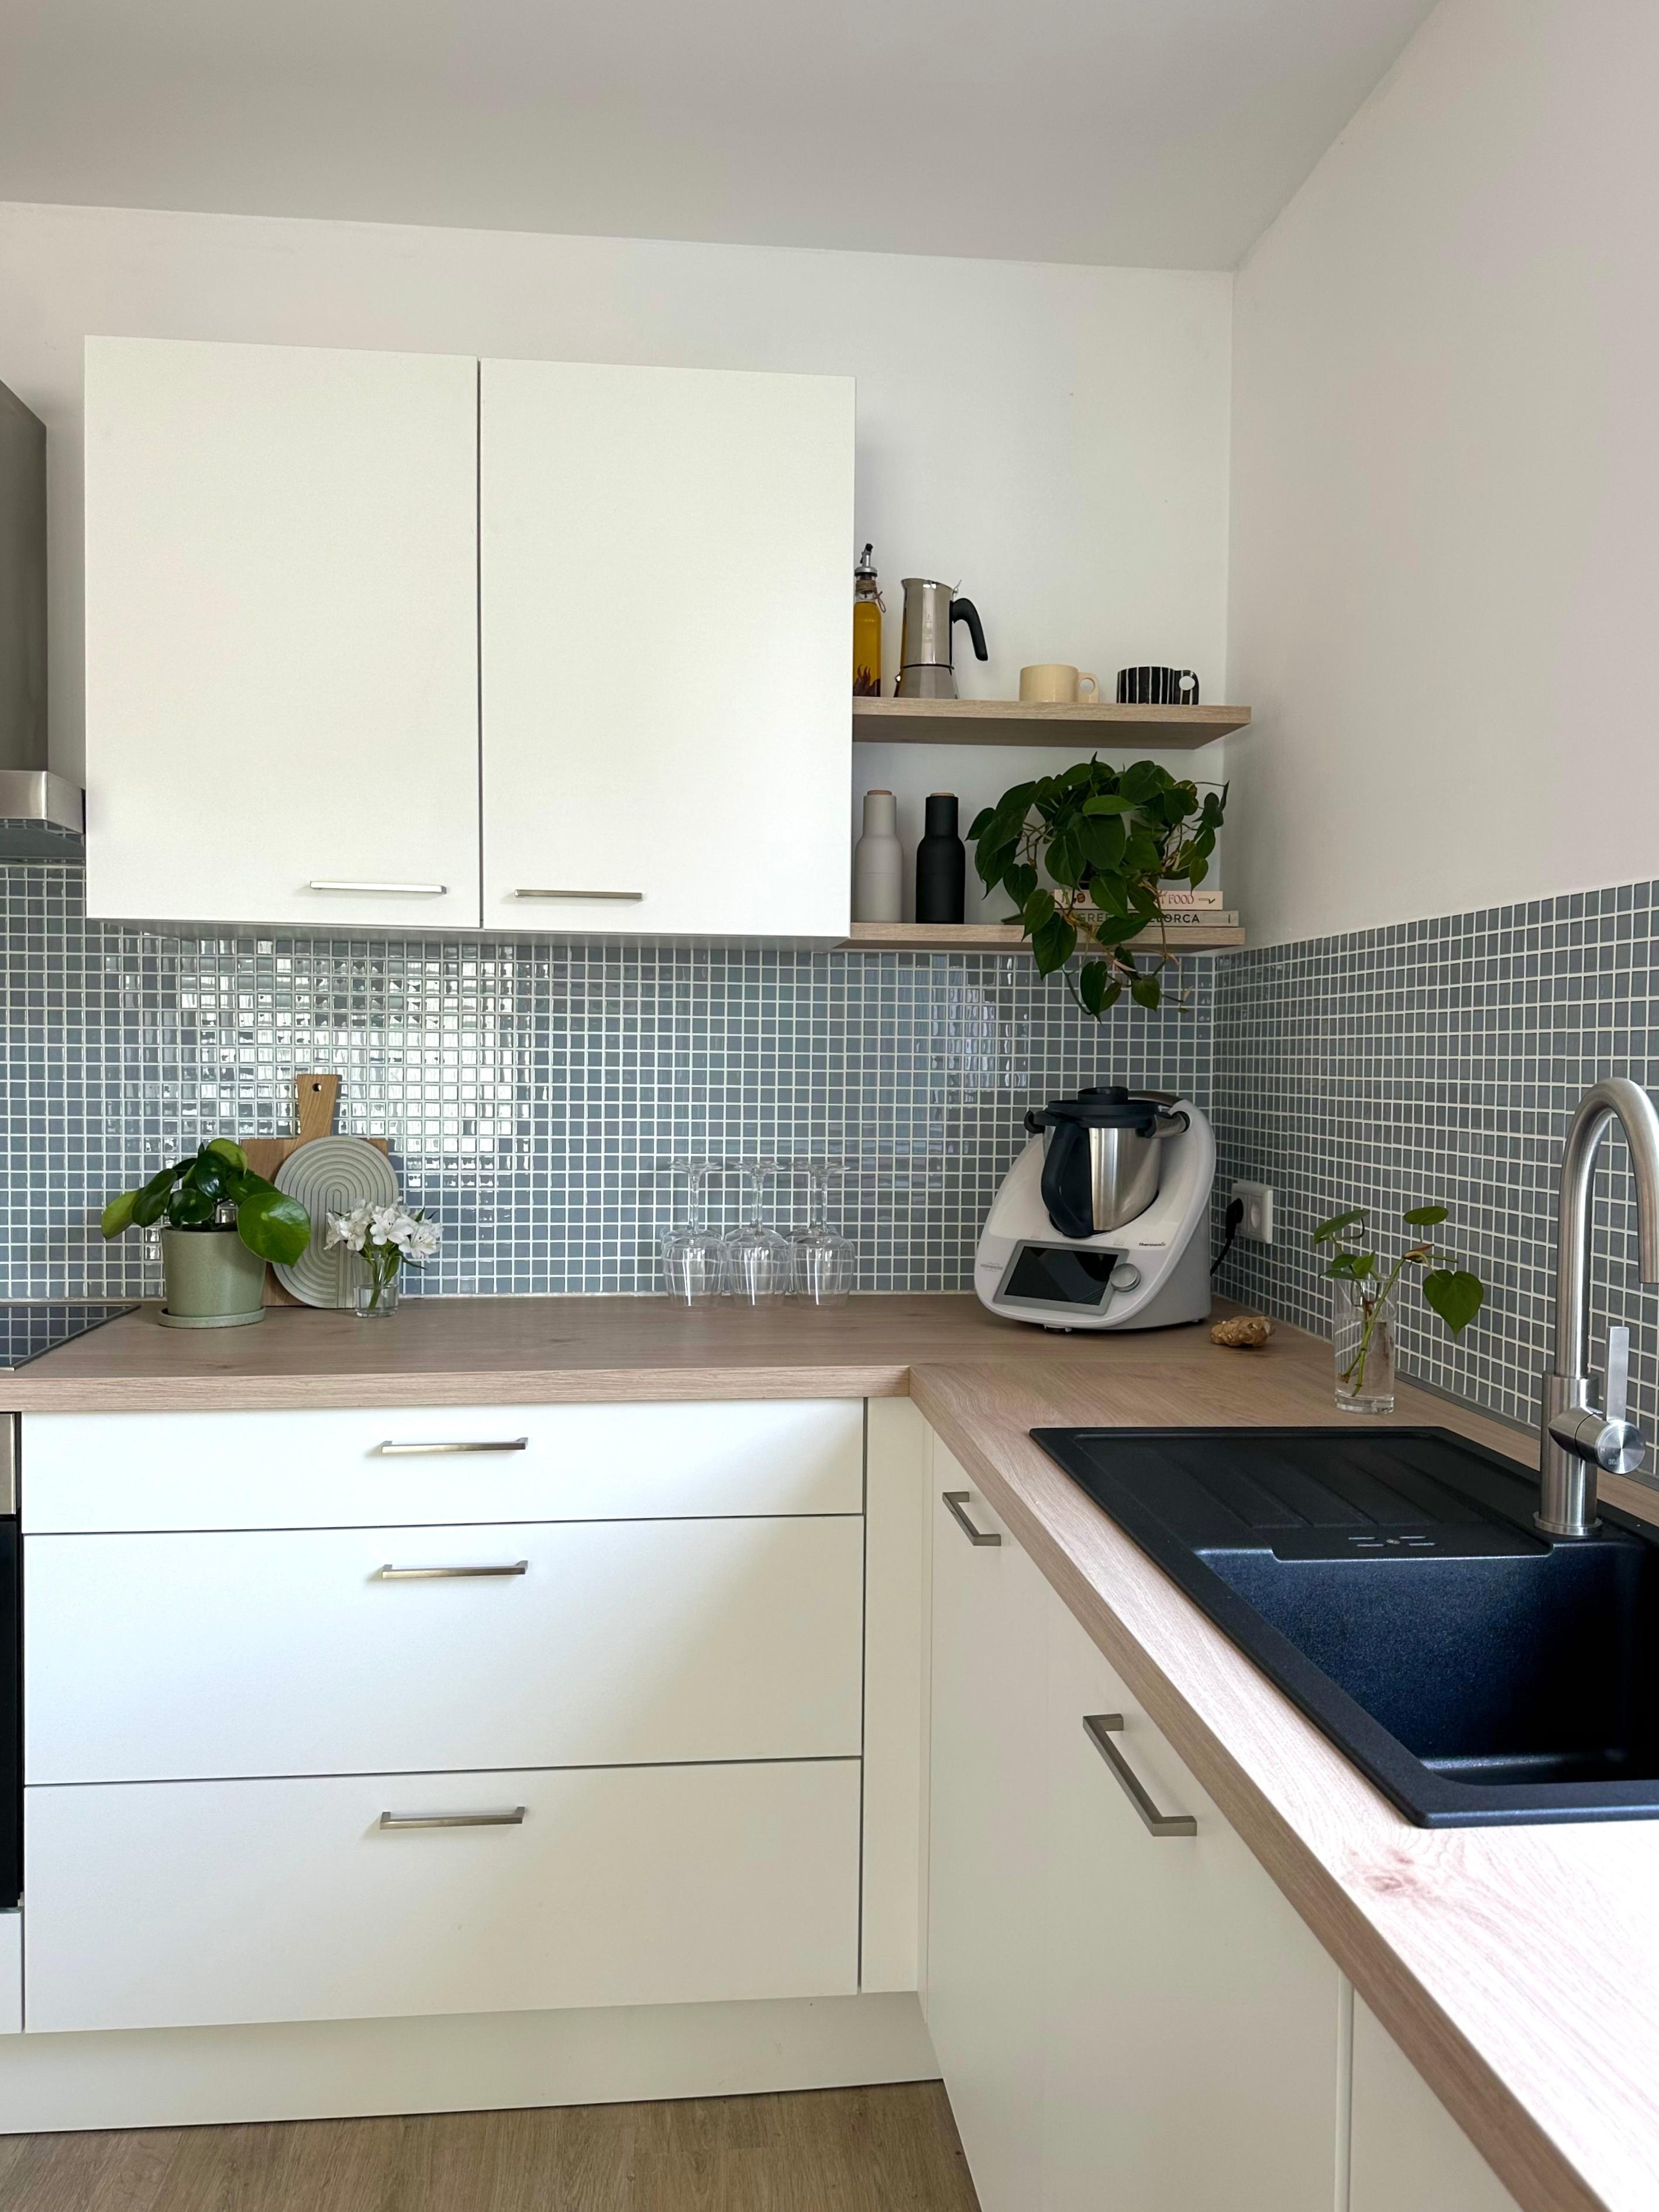 Küche 2/3 #küche #weißeküche #fliesenspiegel #mosaikfliesen #küchenideen #küchendeko #küchenliebe #couchliebt 